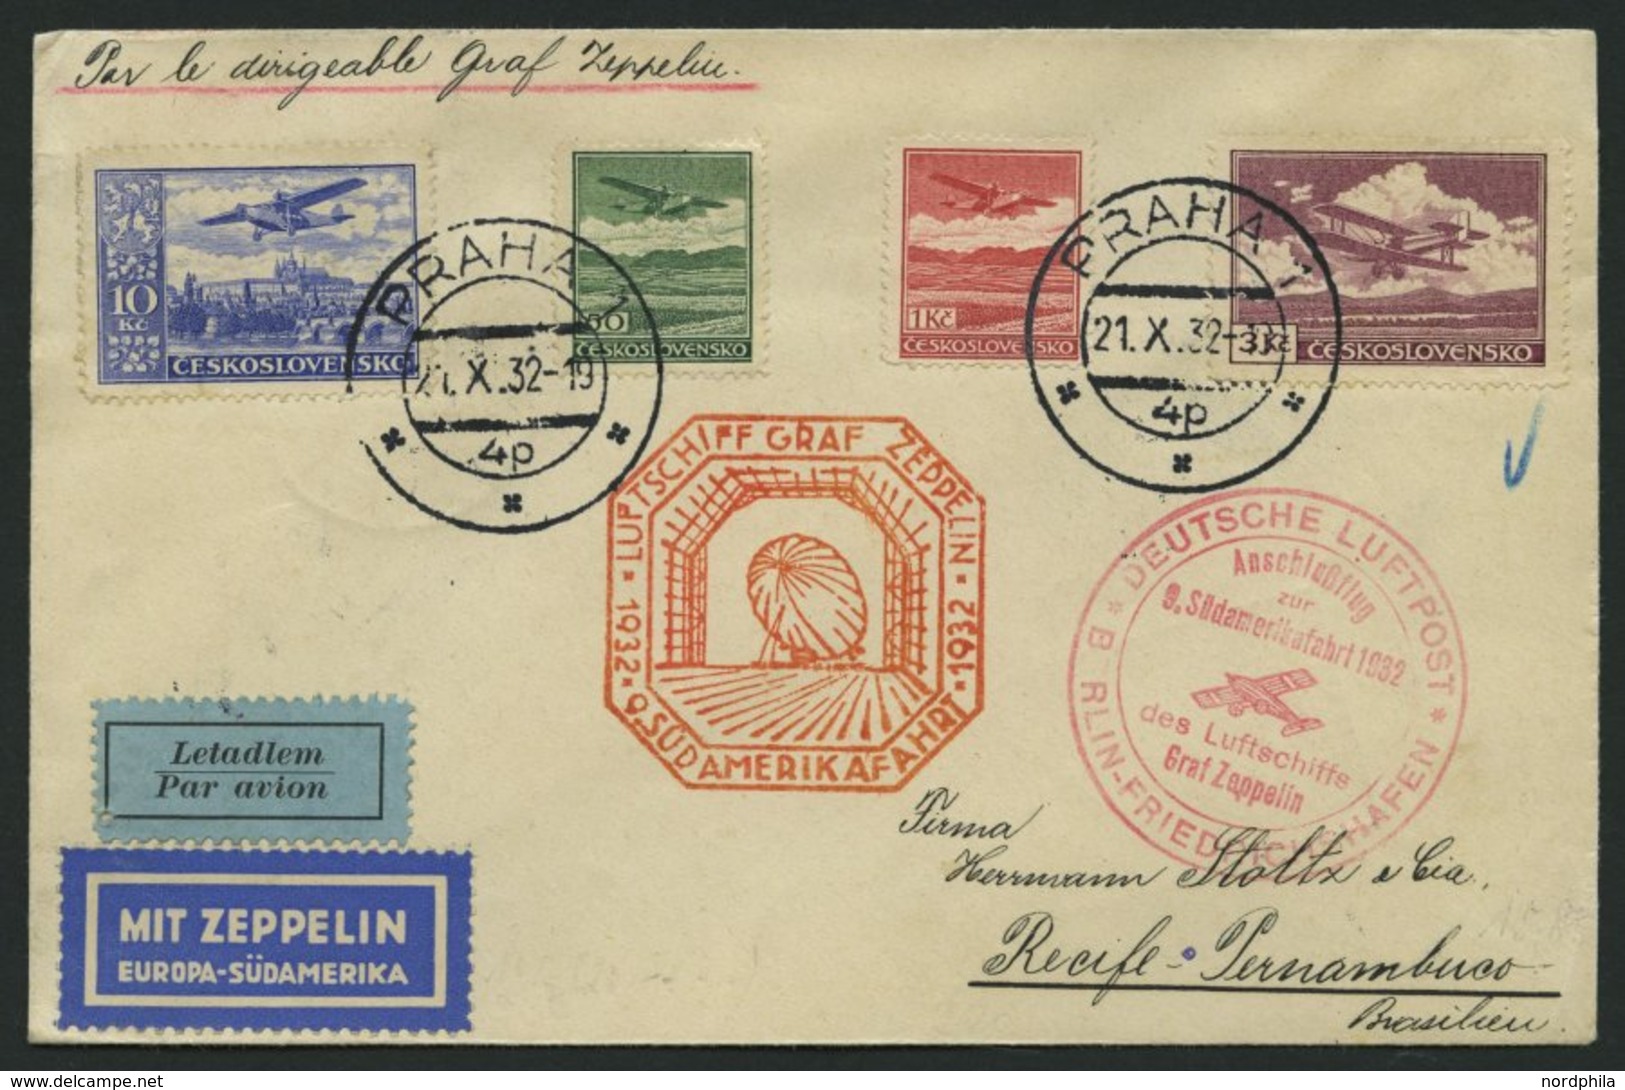 ZULEITUNGSPOST 195B BRIEF, Tschechoslowakei: 1932, 9. Südamerikafahrt, Anschlussflug Ab Berlin, Prachtbrief - Airmail & Zeppelin